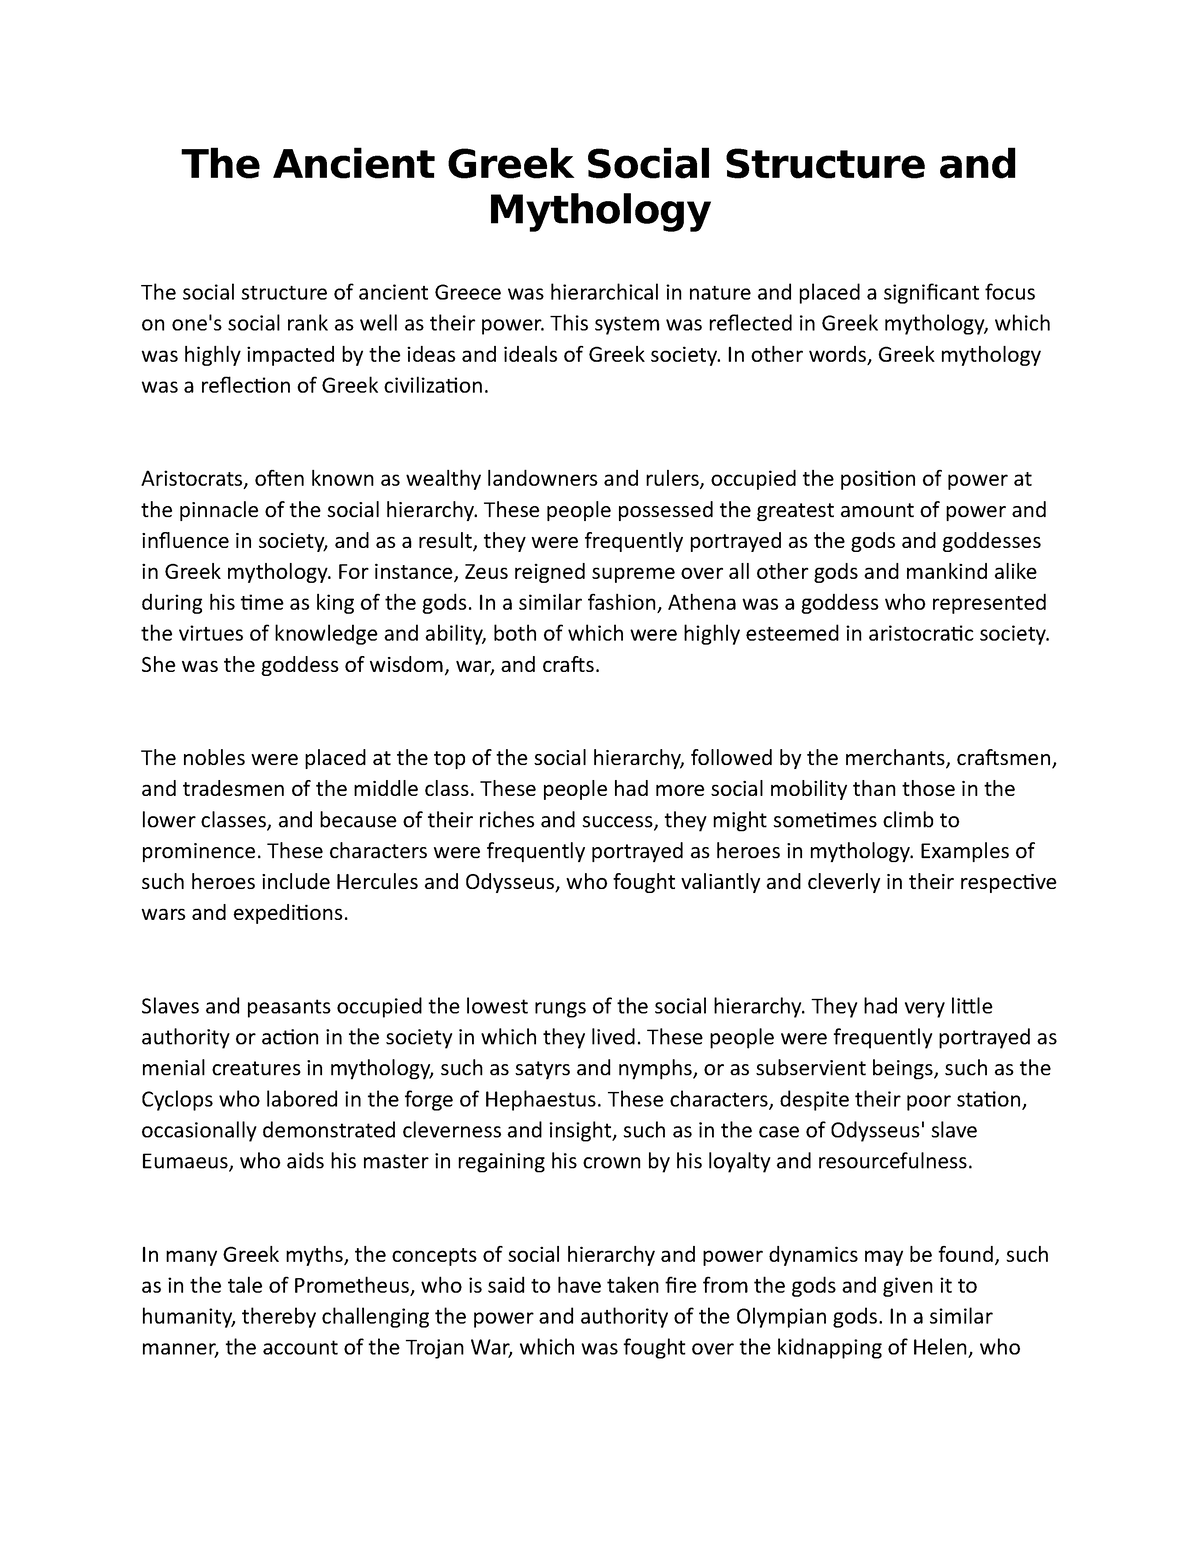 how to write an essay on greek mythology